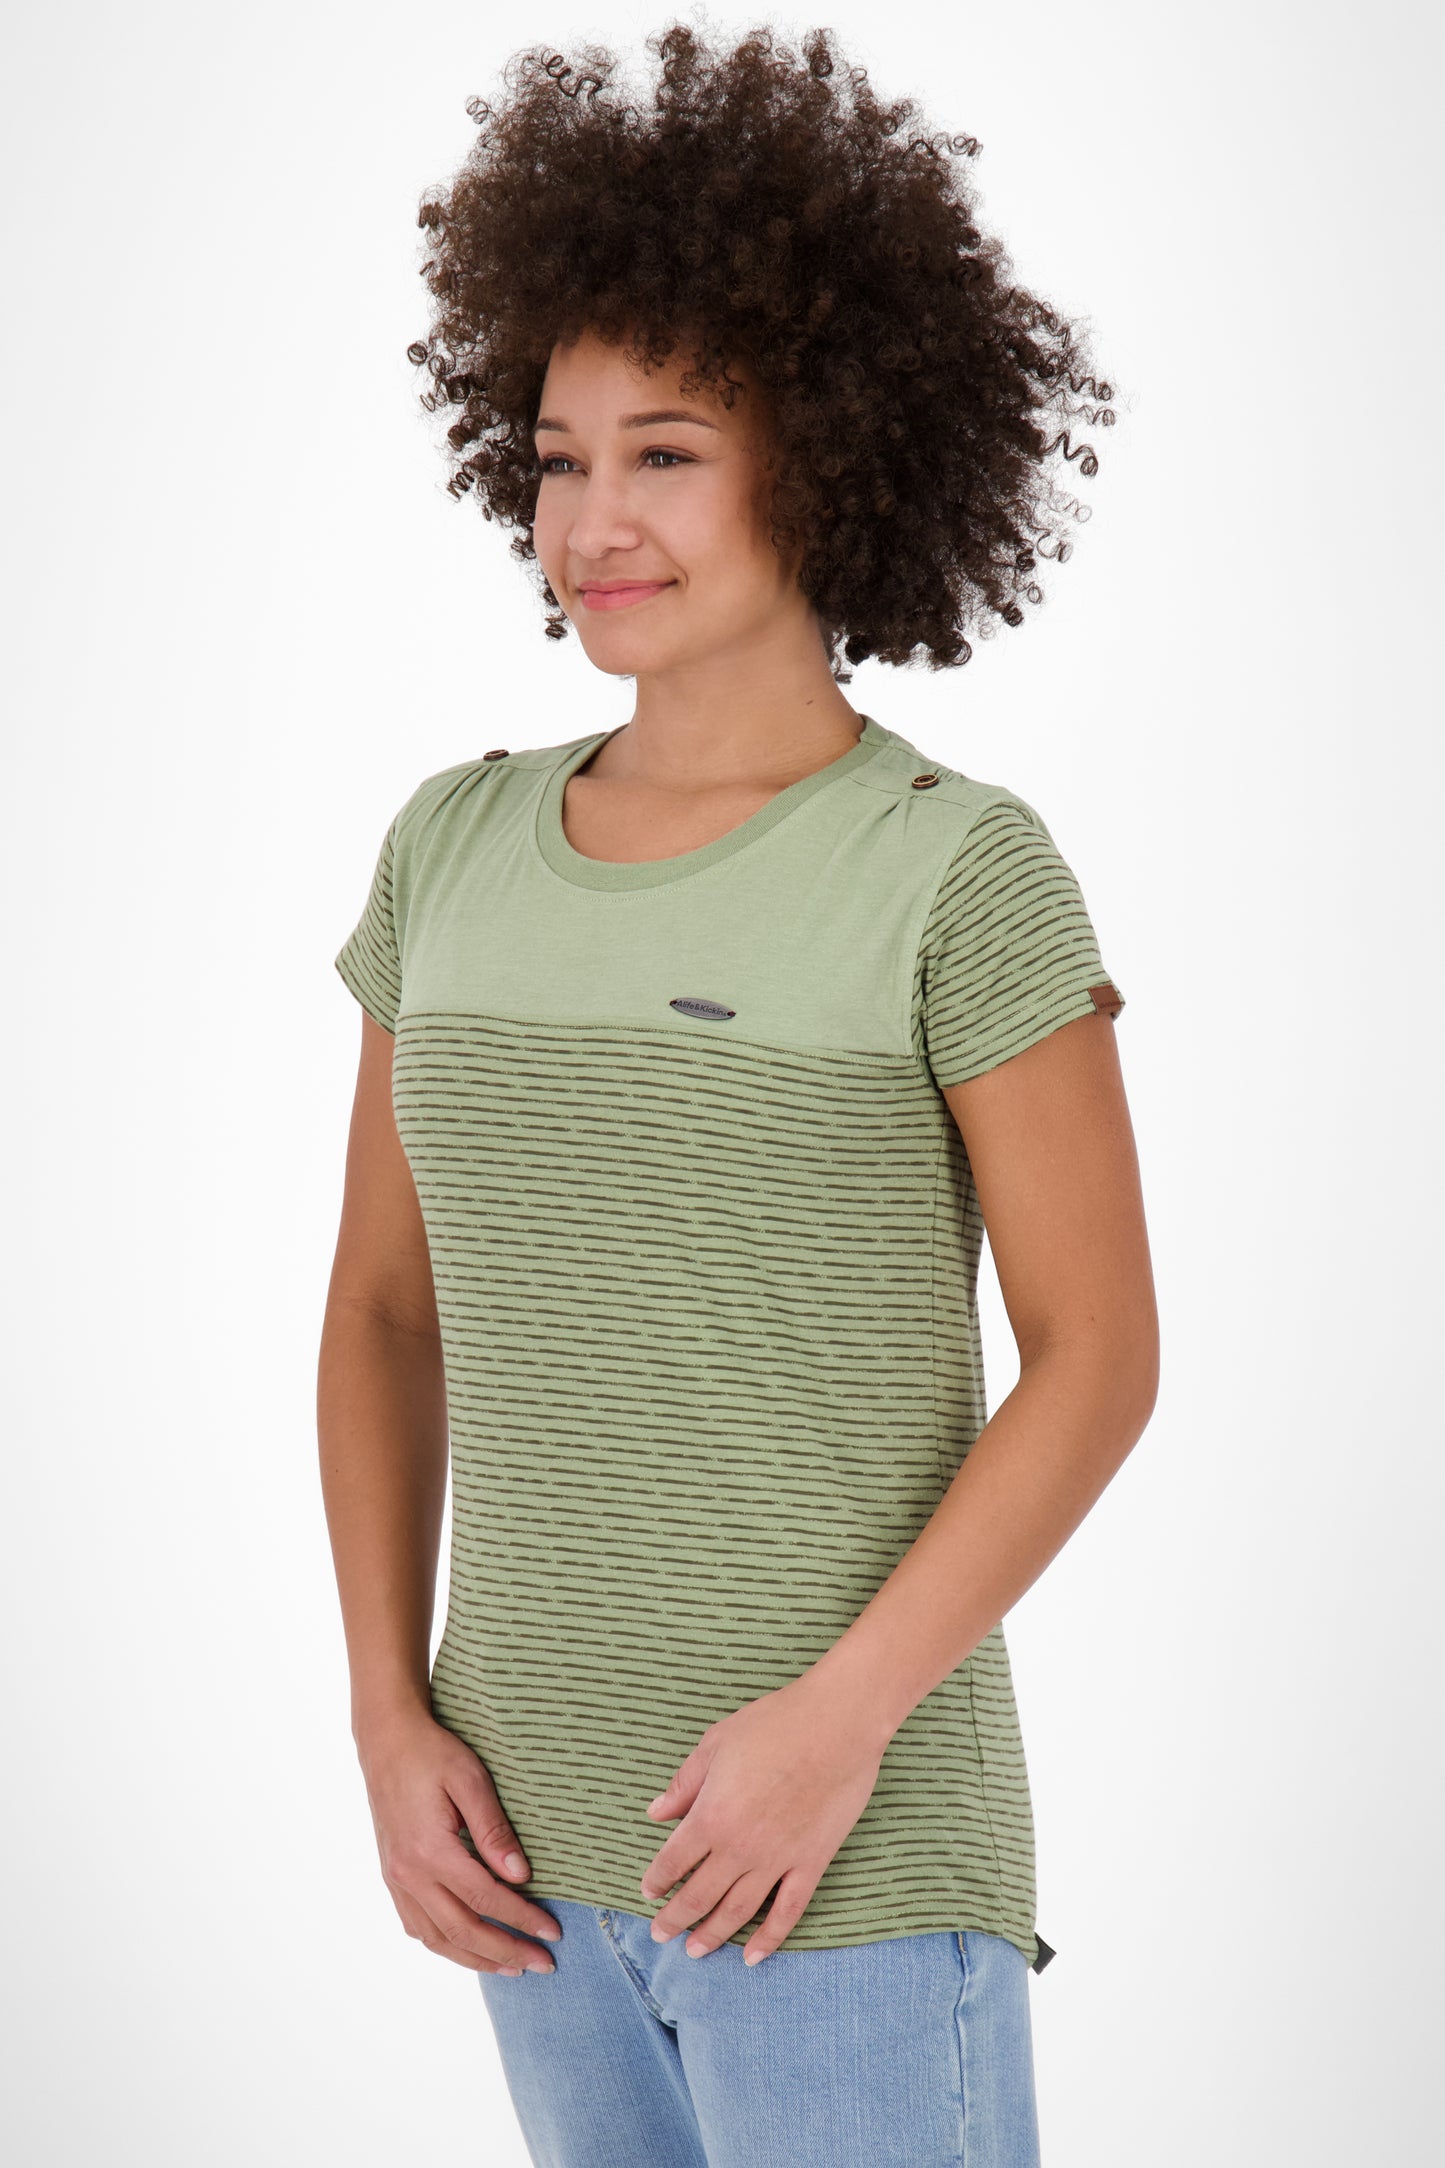 Stylisches Streifen-Shirt - LioAK Z von Alife and Kickin Grün